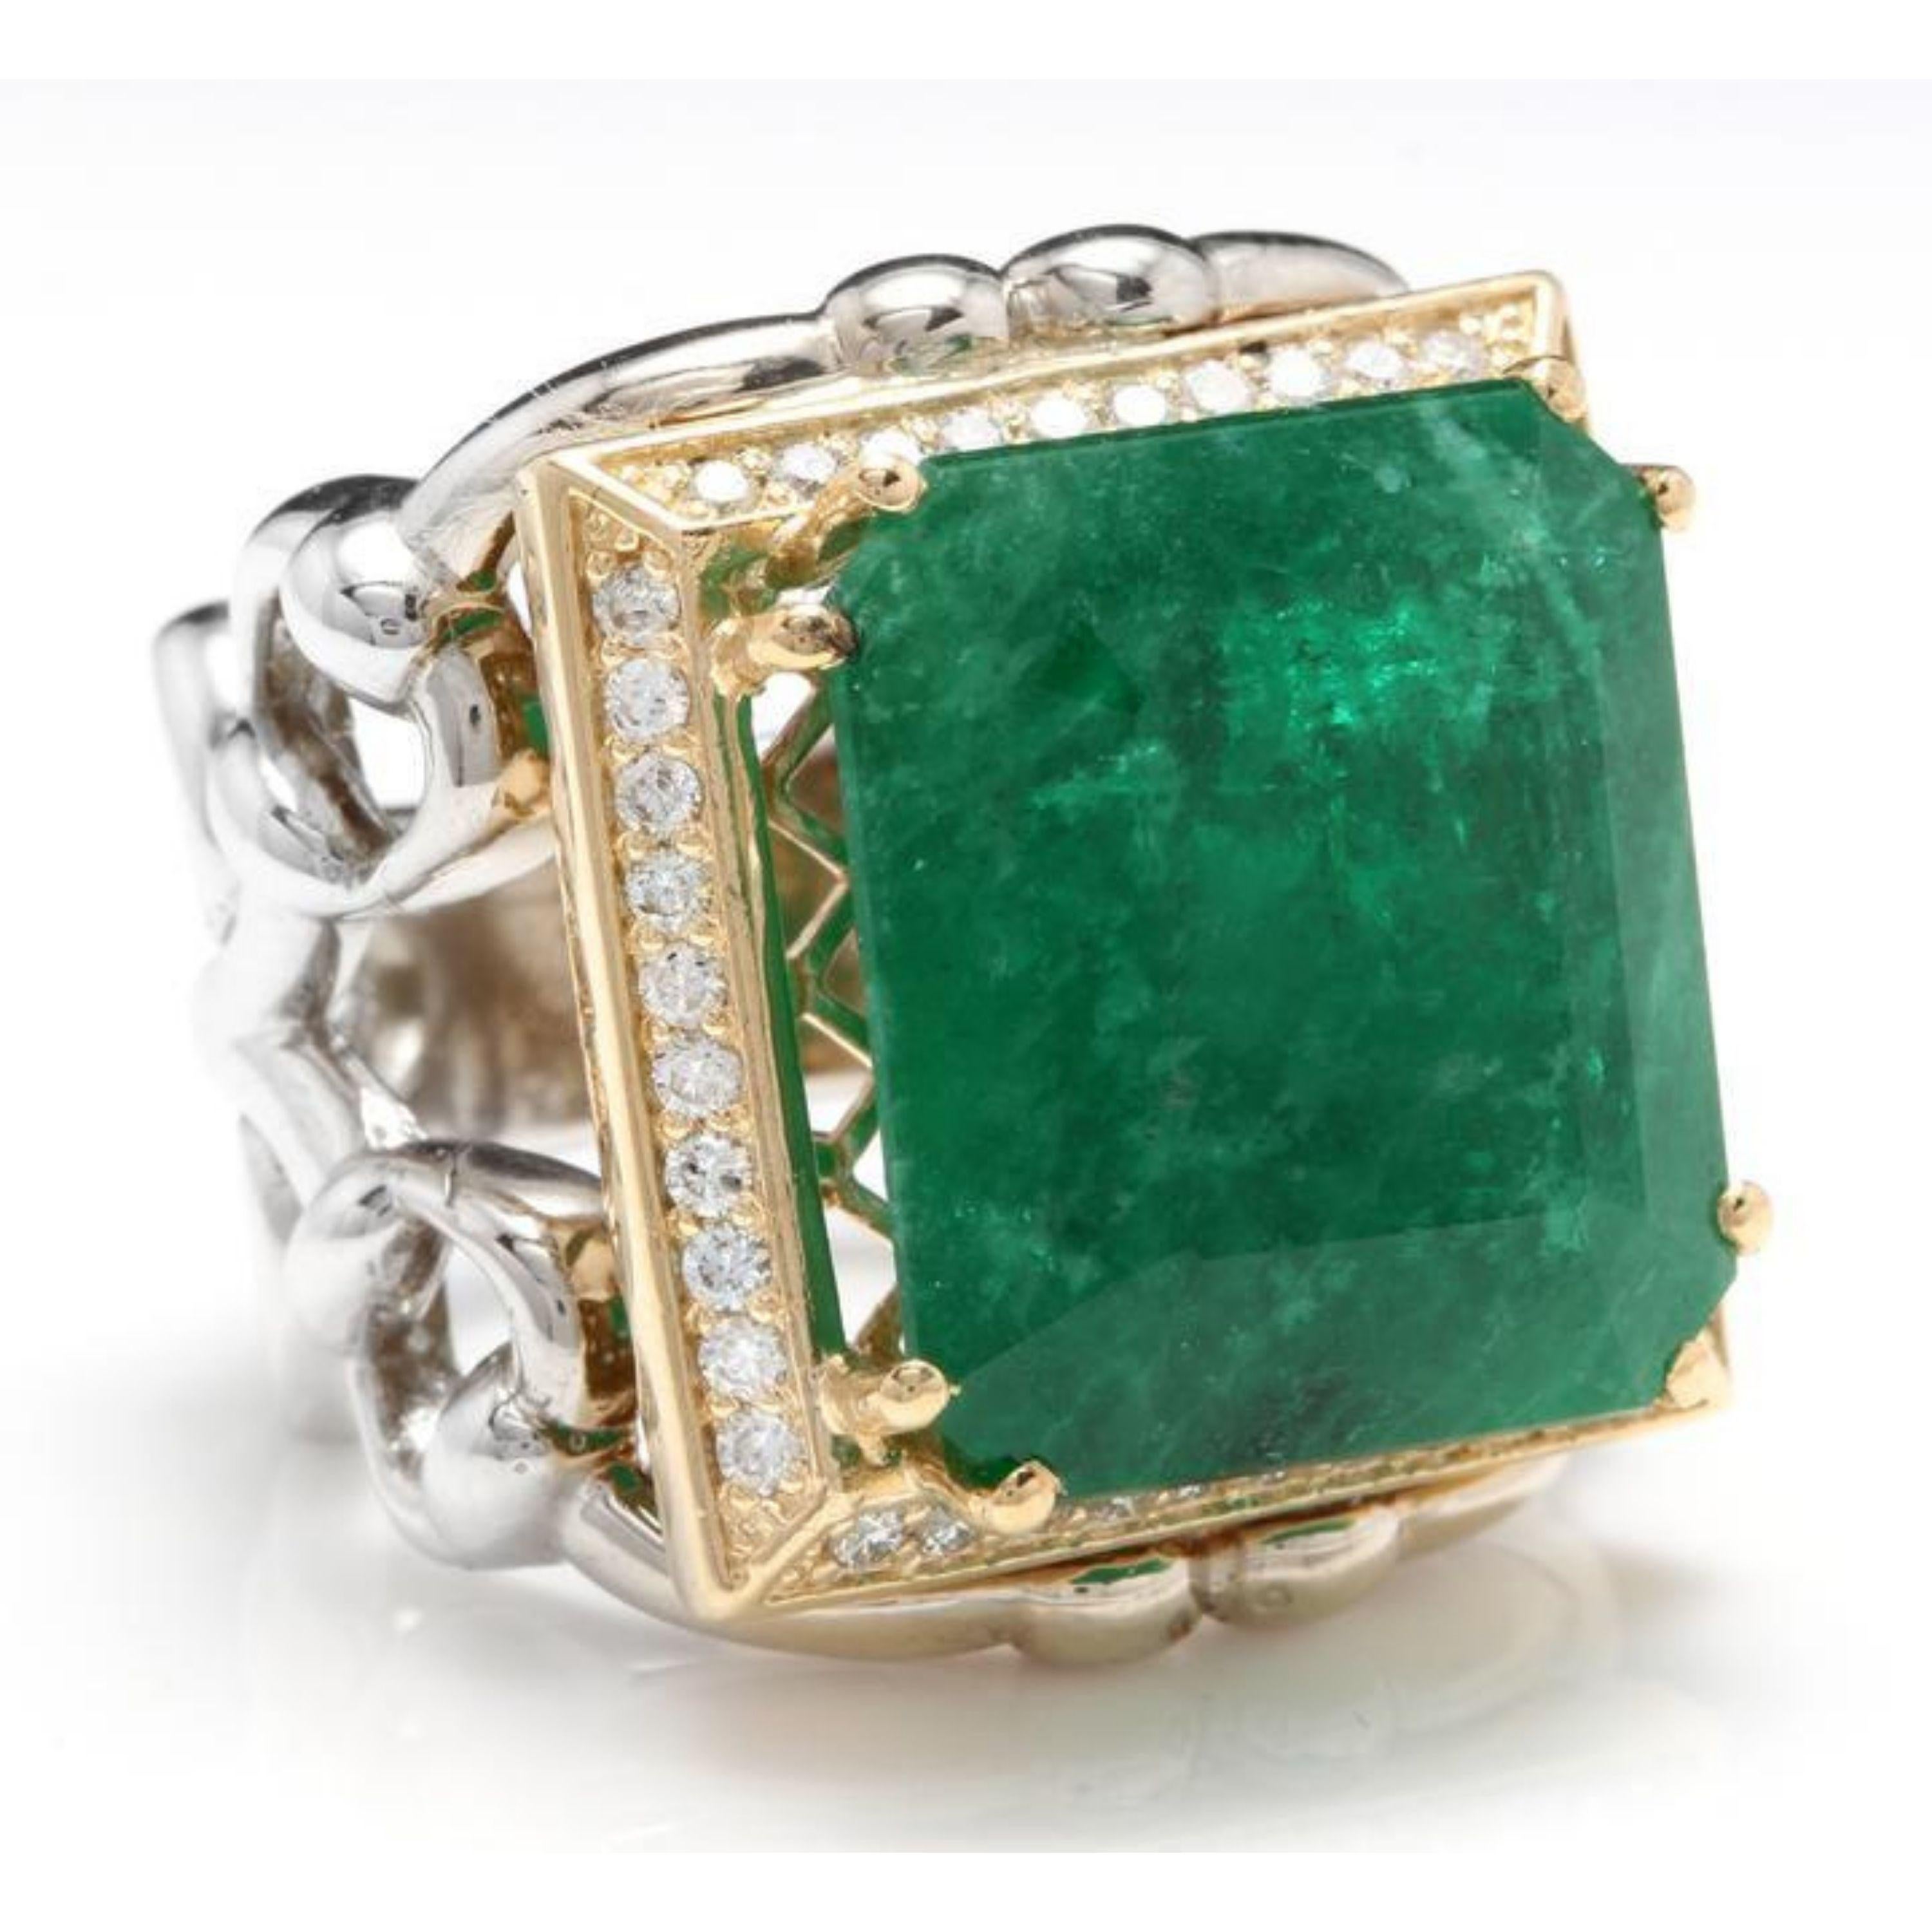 18.35 Karat Natürlicher Smaragd und Diamant 14K Solid Two Gold Ring

Total Natural Green Emerald Gewicht ist: 17.60 Karat

Smaragd Maße: 17.00 x 15.50mm

Natürliche runde Diamanten Gewicht: Ca. 0,75 Karat (Farbe G-H / Reinheit SI1-SI2)

Ringgröße: 7